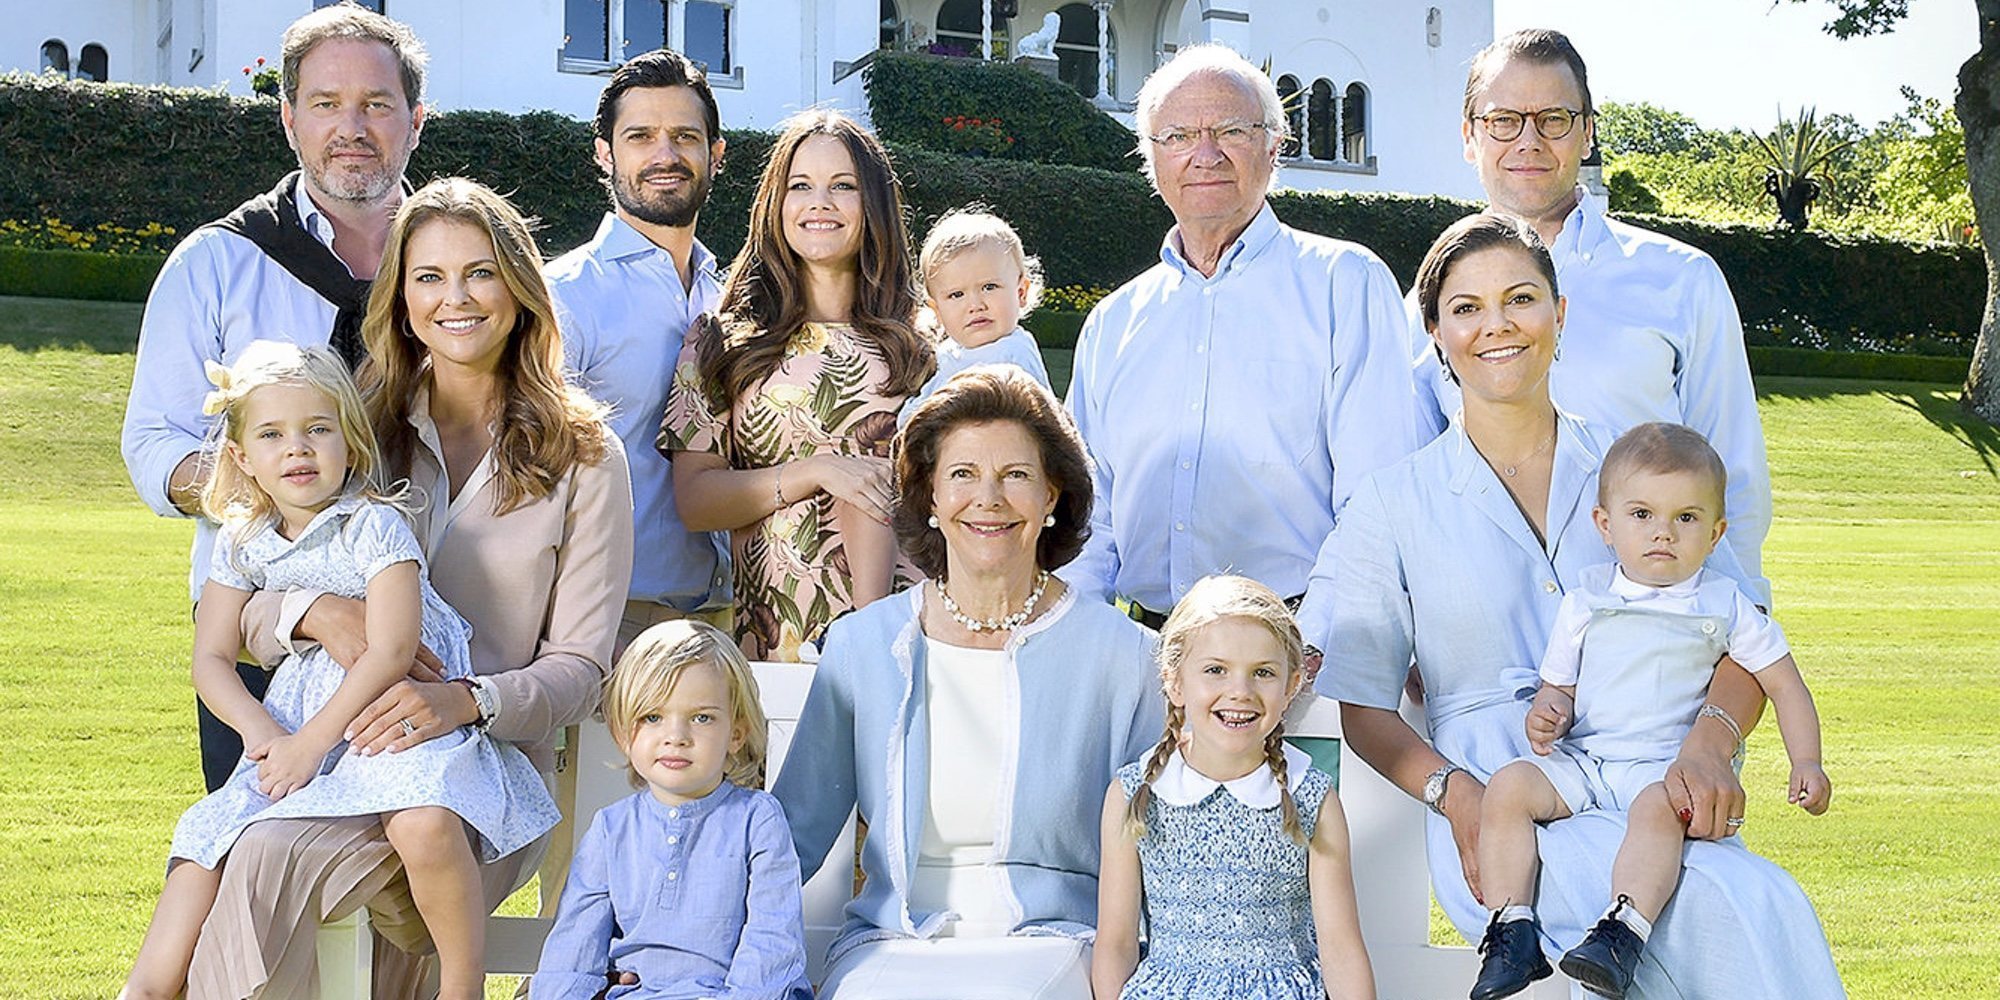 El entrañable encuentro virtual de la Familia Real Sueca al completo por Pascua